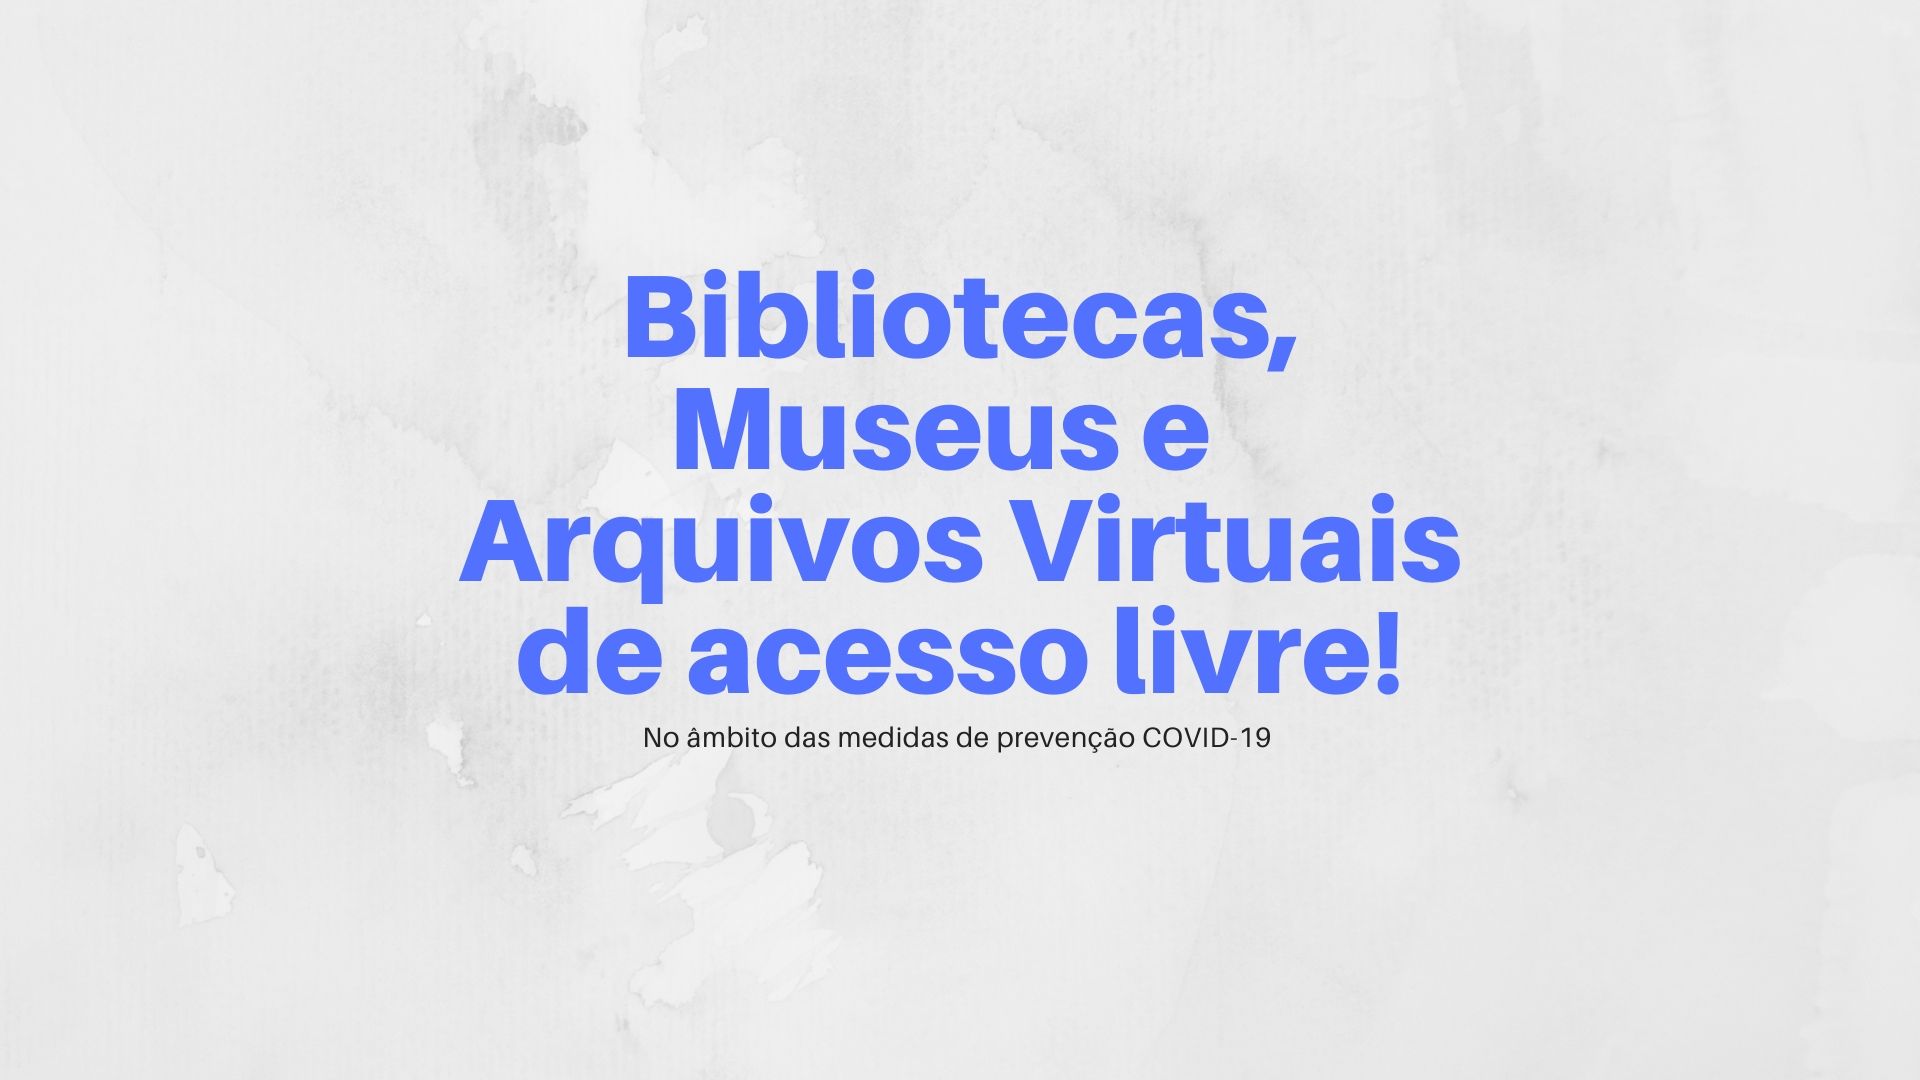 Acesso livre aos Arquivos de Bibliotecas e Museus Virtuais